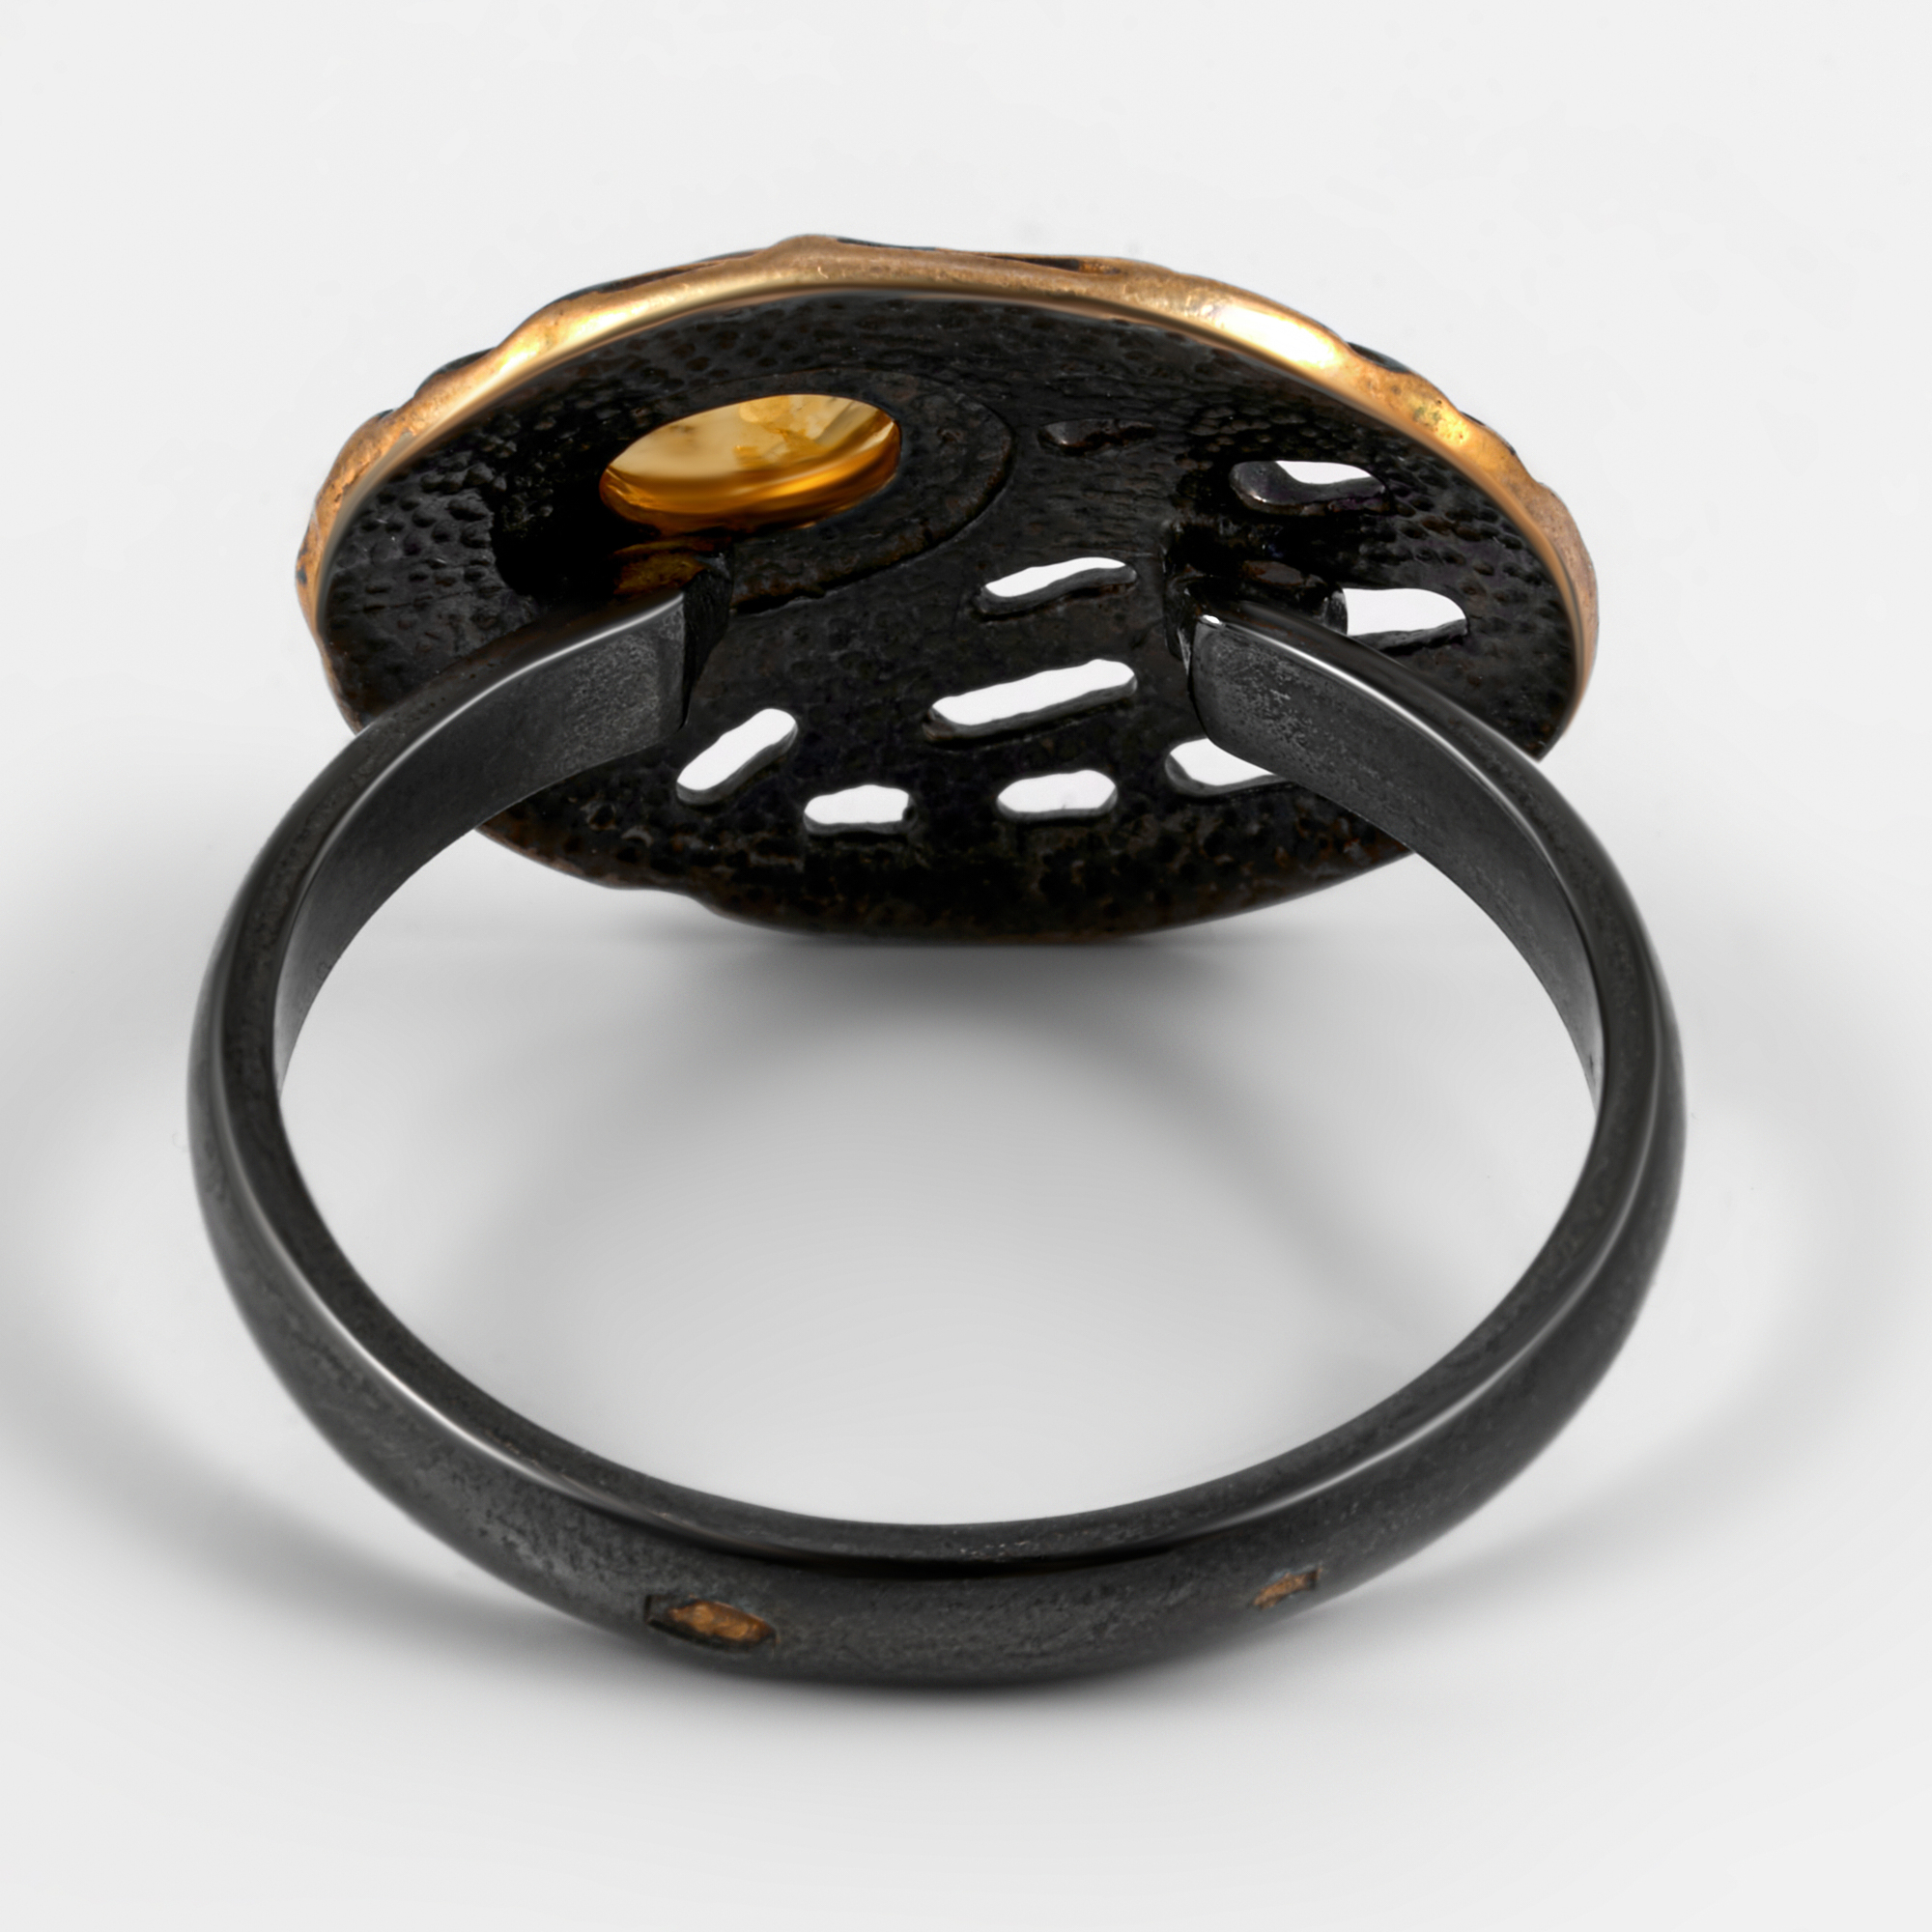 Серебряное кольцо Балтийское золото из серебра с позолотой со вставками из полудрагоценных камней (янтарь) ЯН71131081, размеры от 17 до 18.5